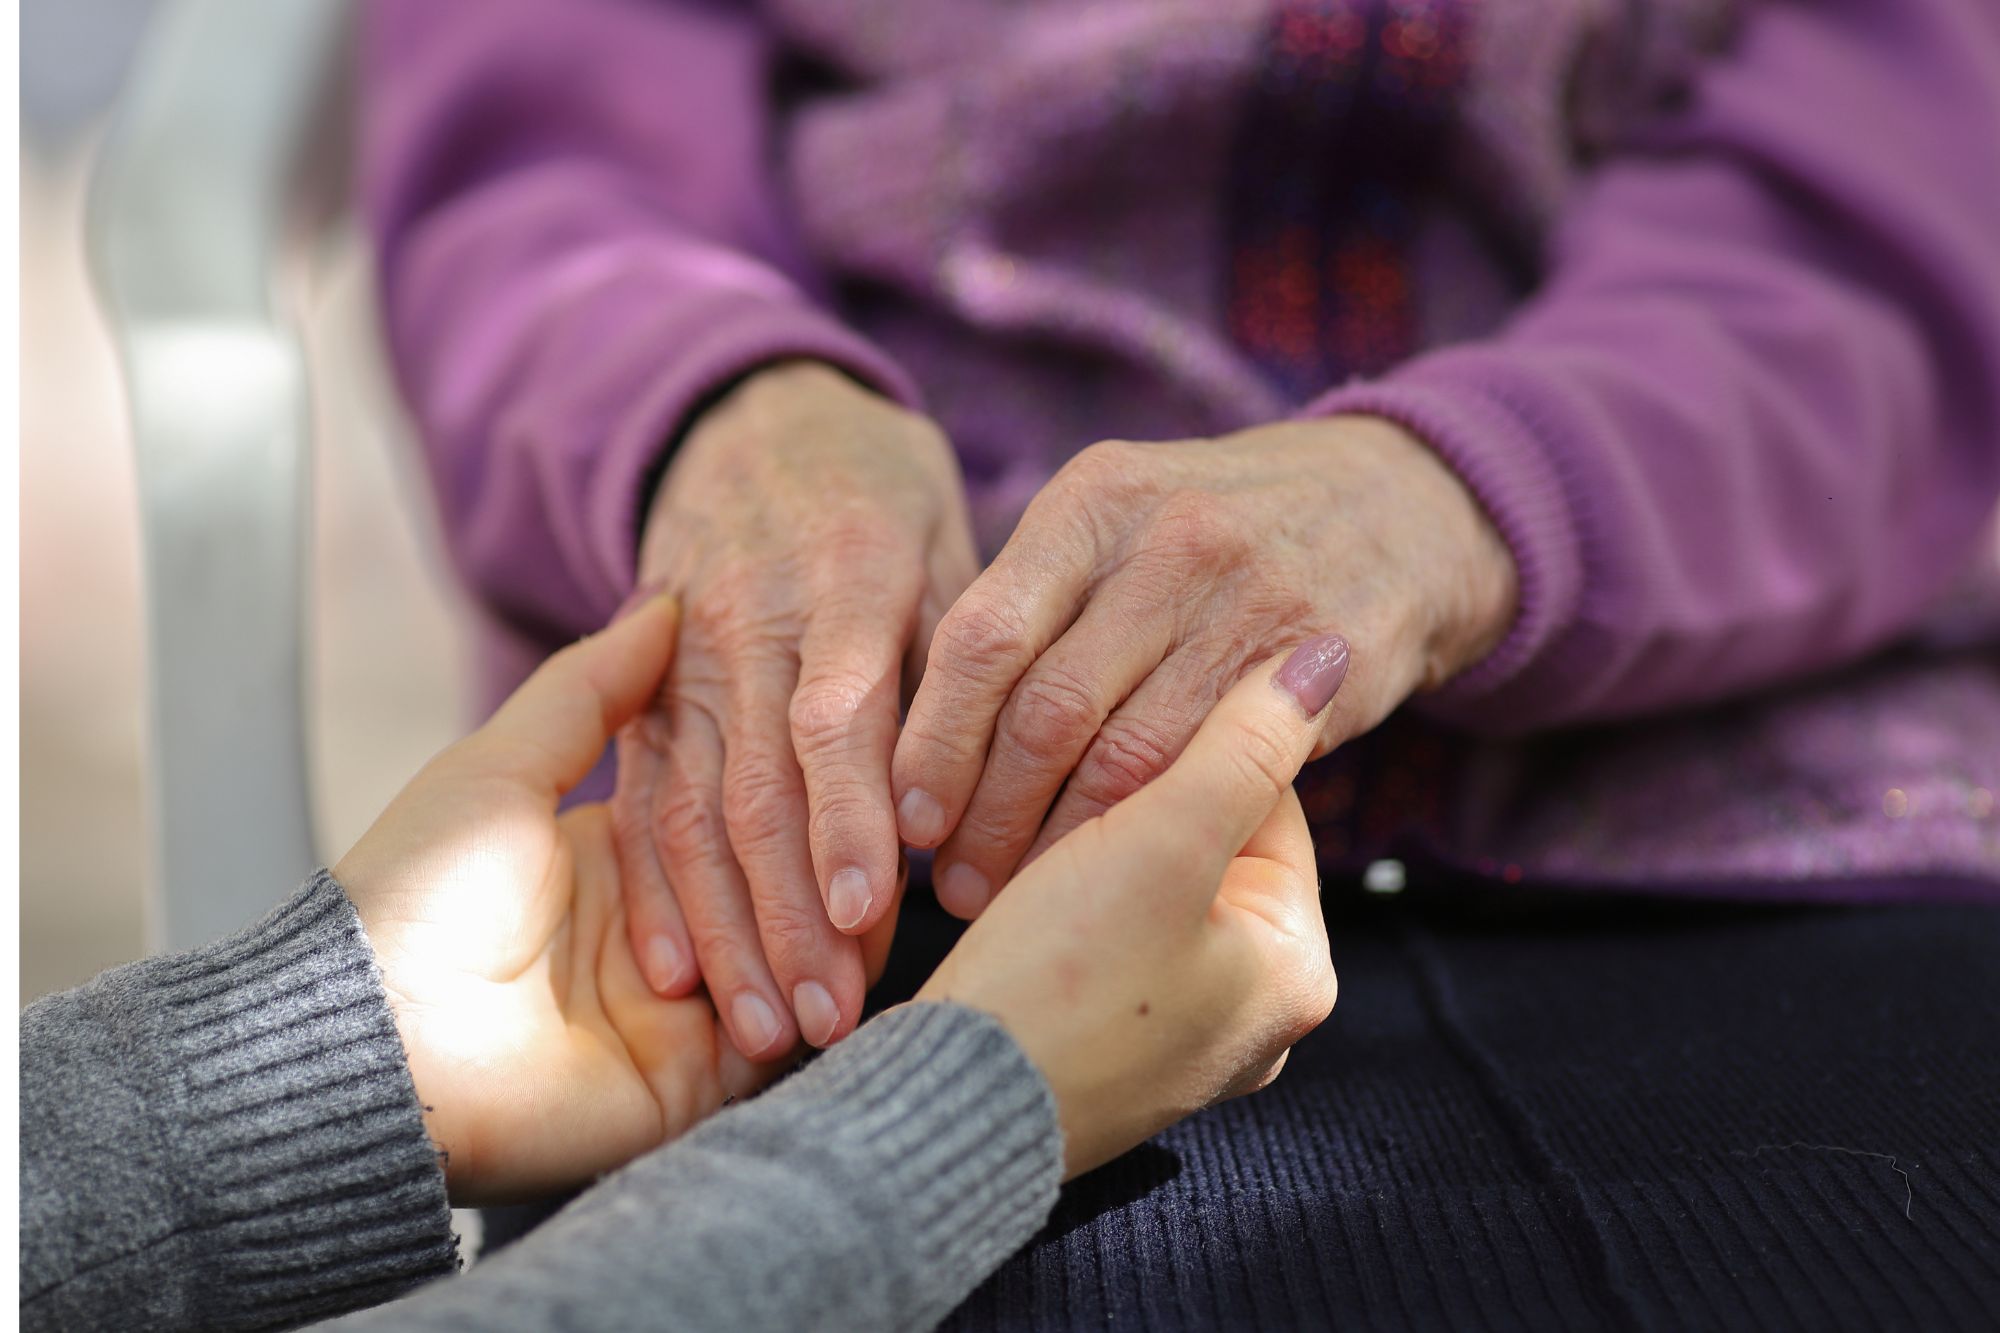 Lazio, la proposta sul caregiver familiare è legge